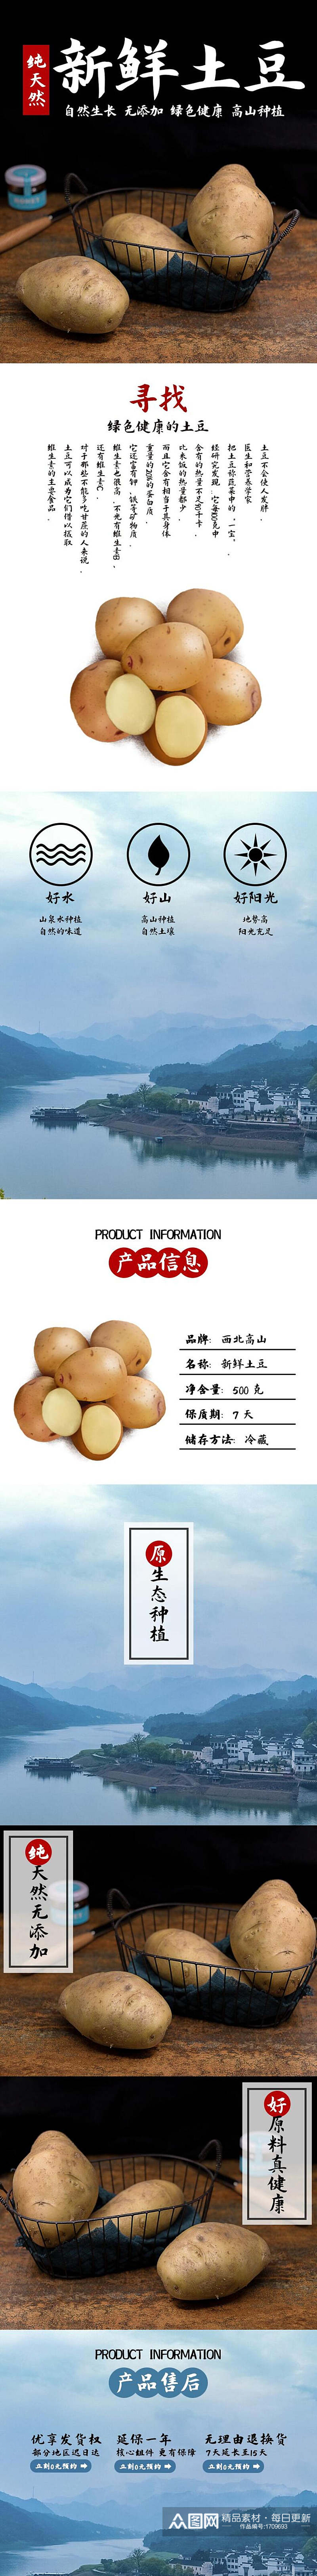 天然新鲜土豆土特产电商详情页素材